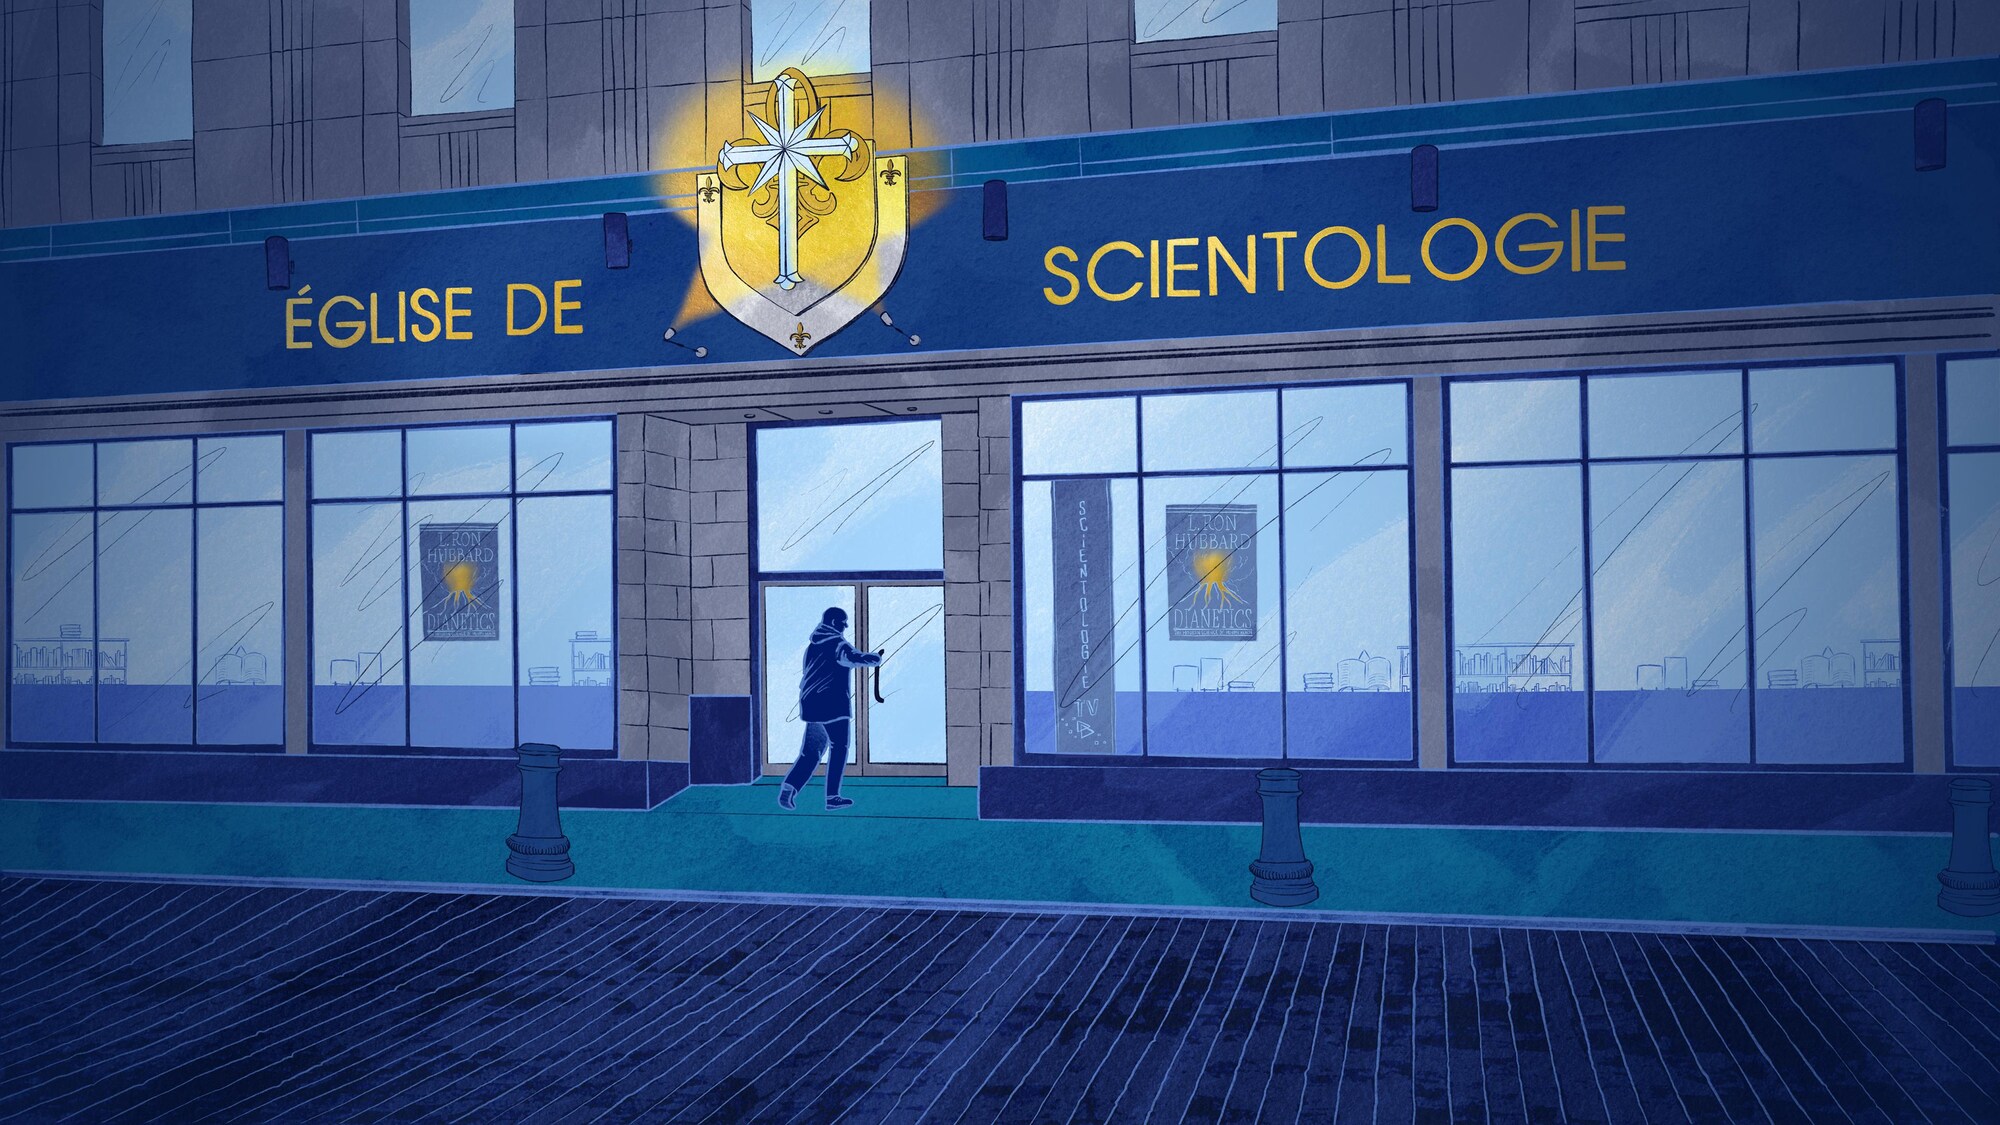 Les locaux de l'église de scientologie à Québec.